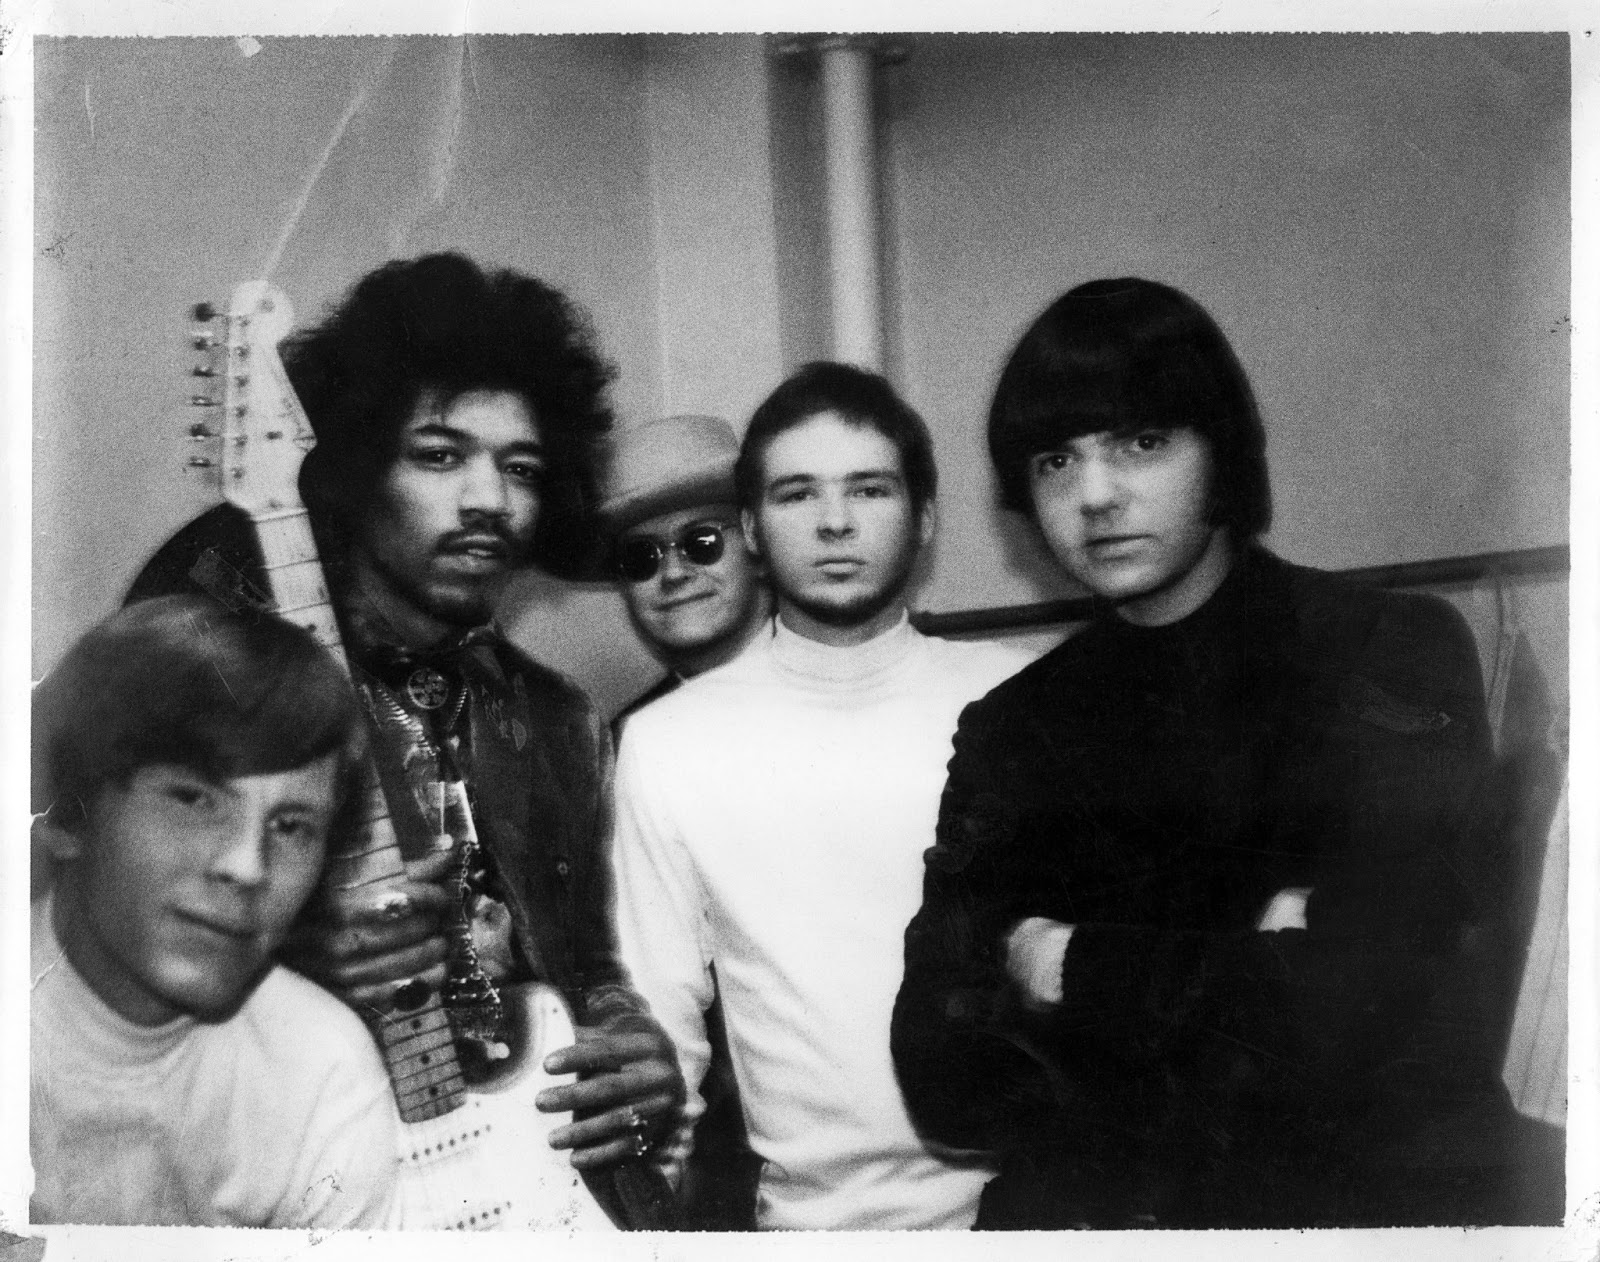 ++1A.+Hendrix.Sidewalks-1968.jpg